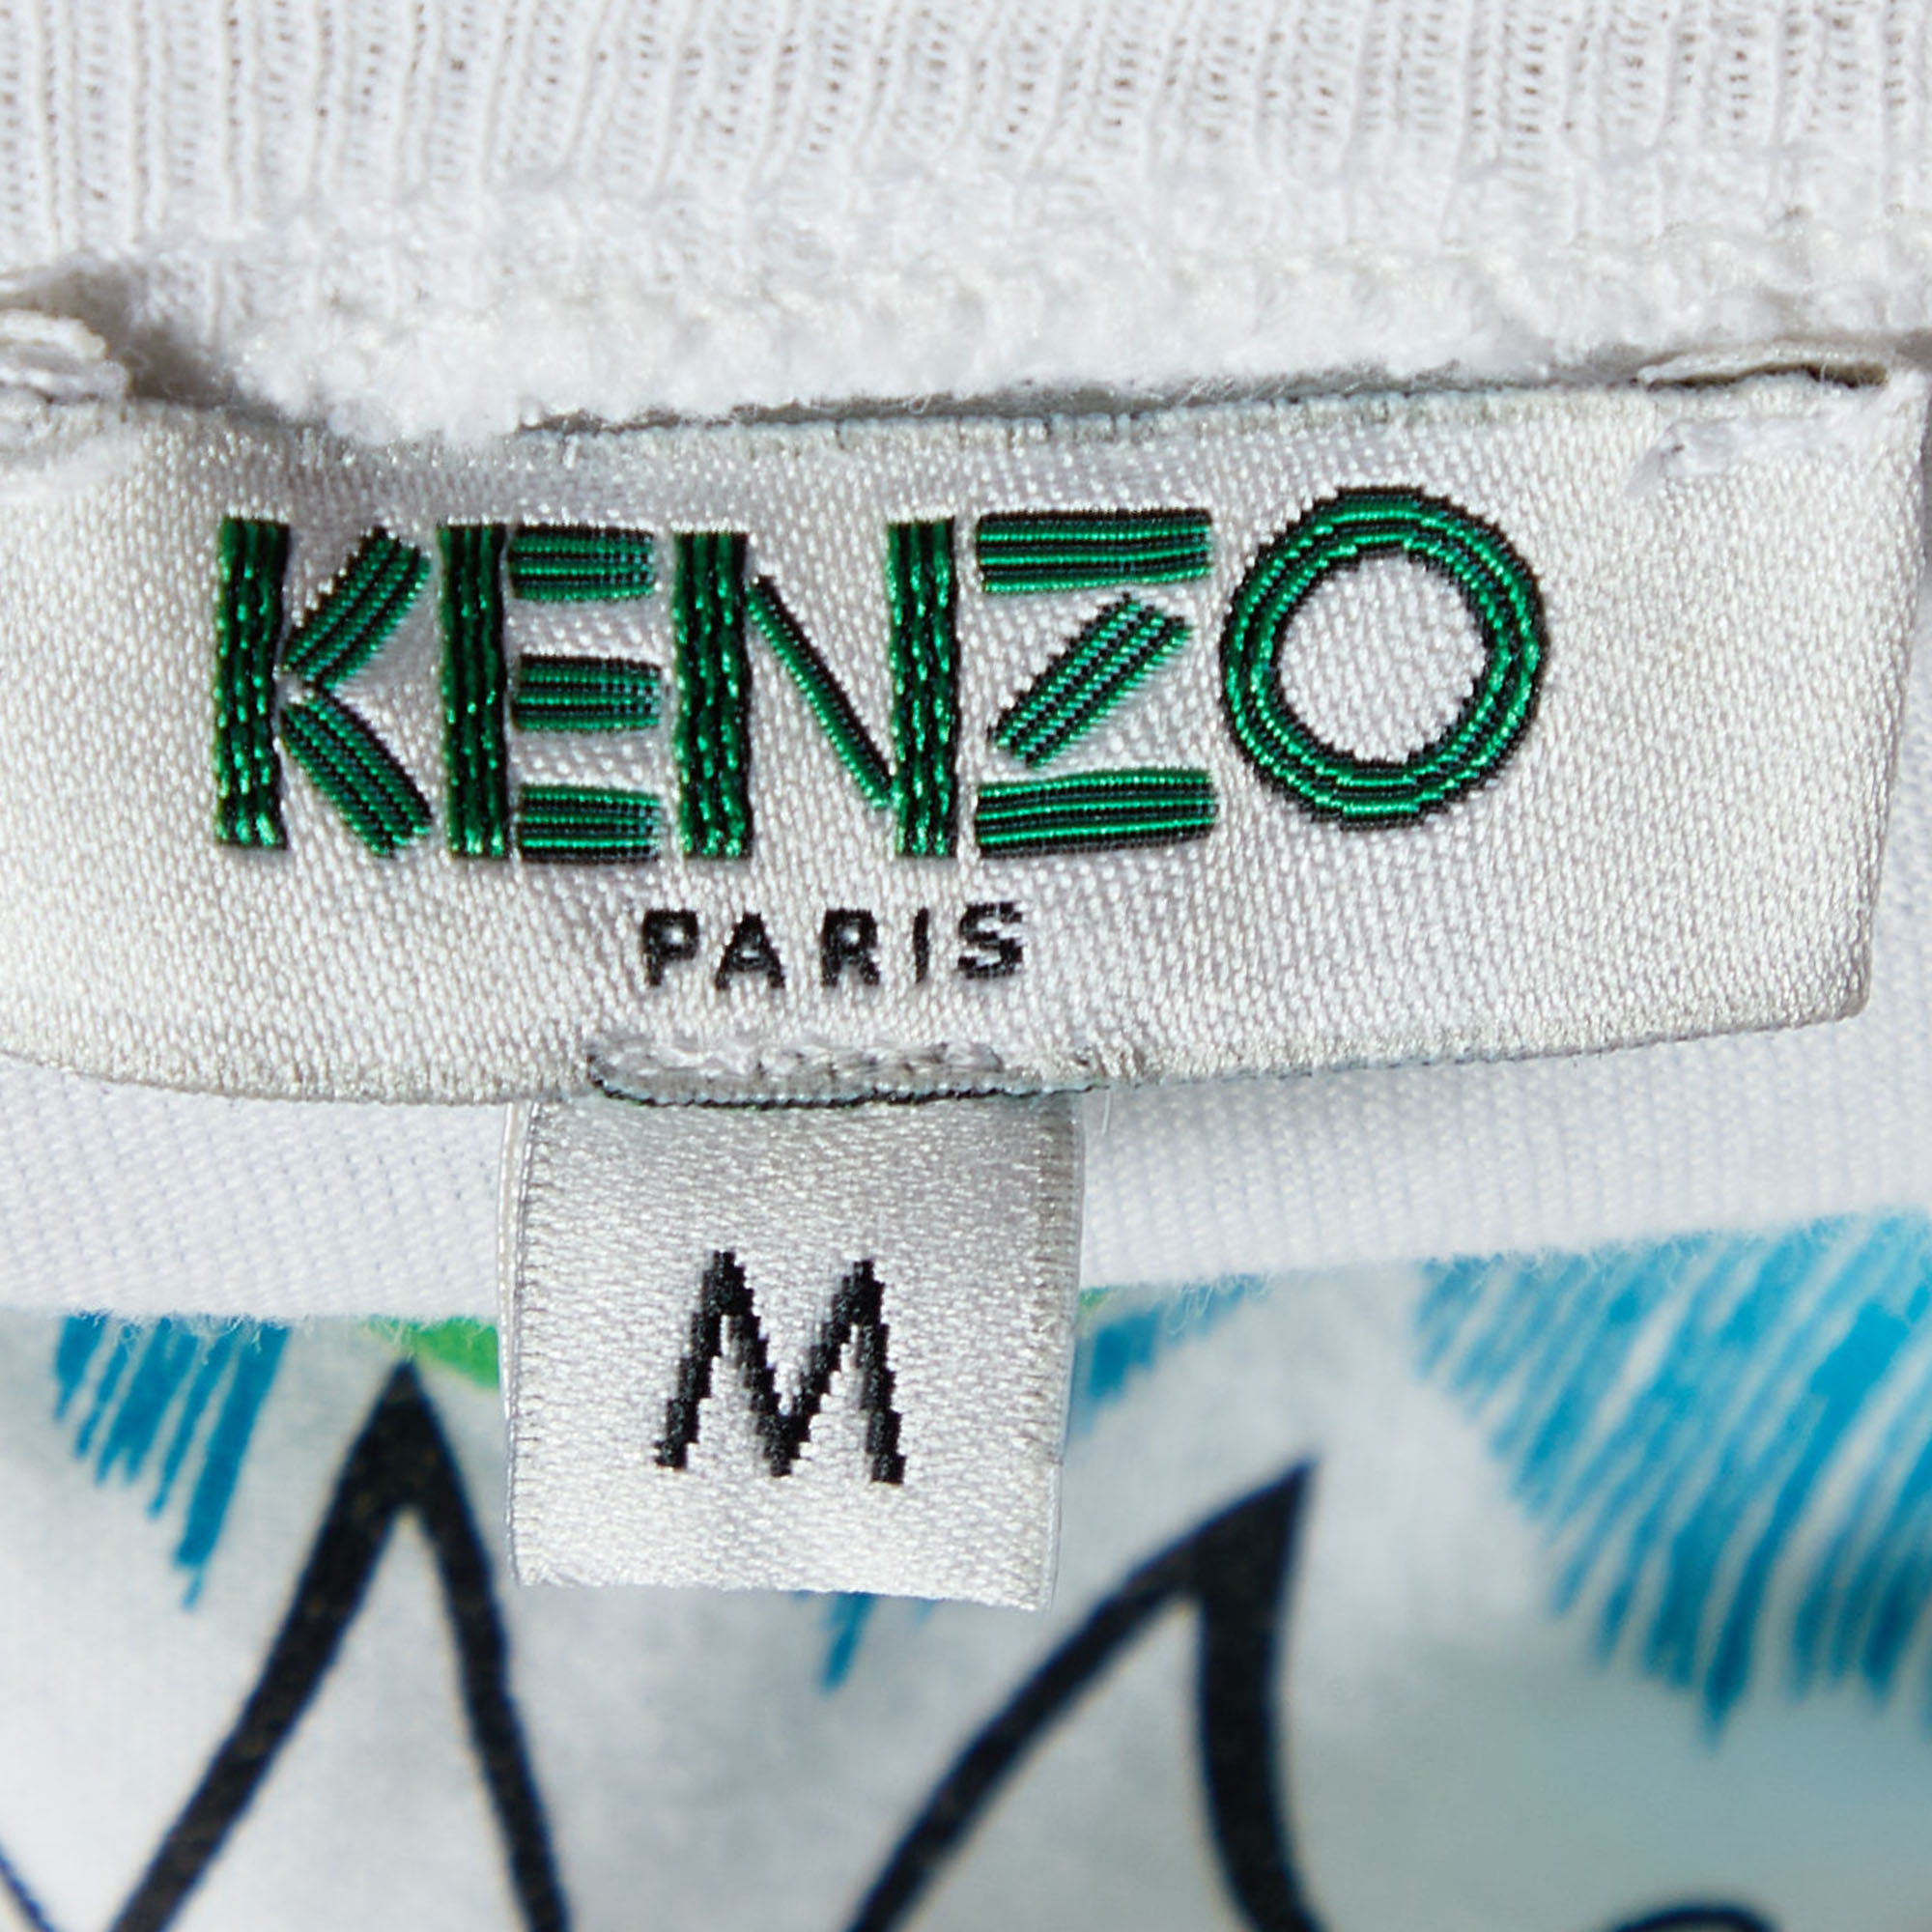 Kenzo White Tiger Motif Print Cotton Jersey Crew Neck T Shirt M